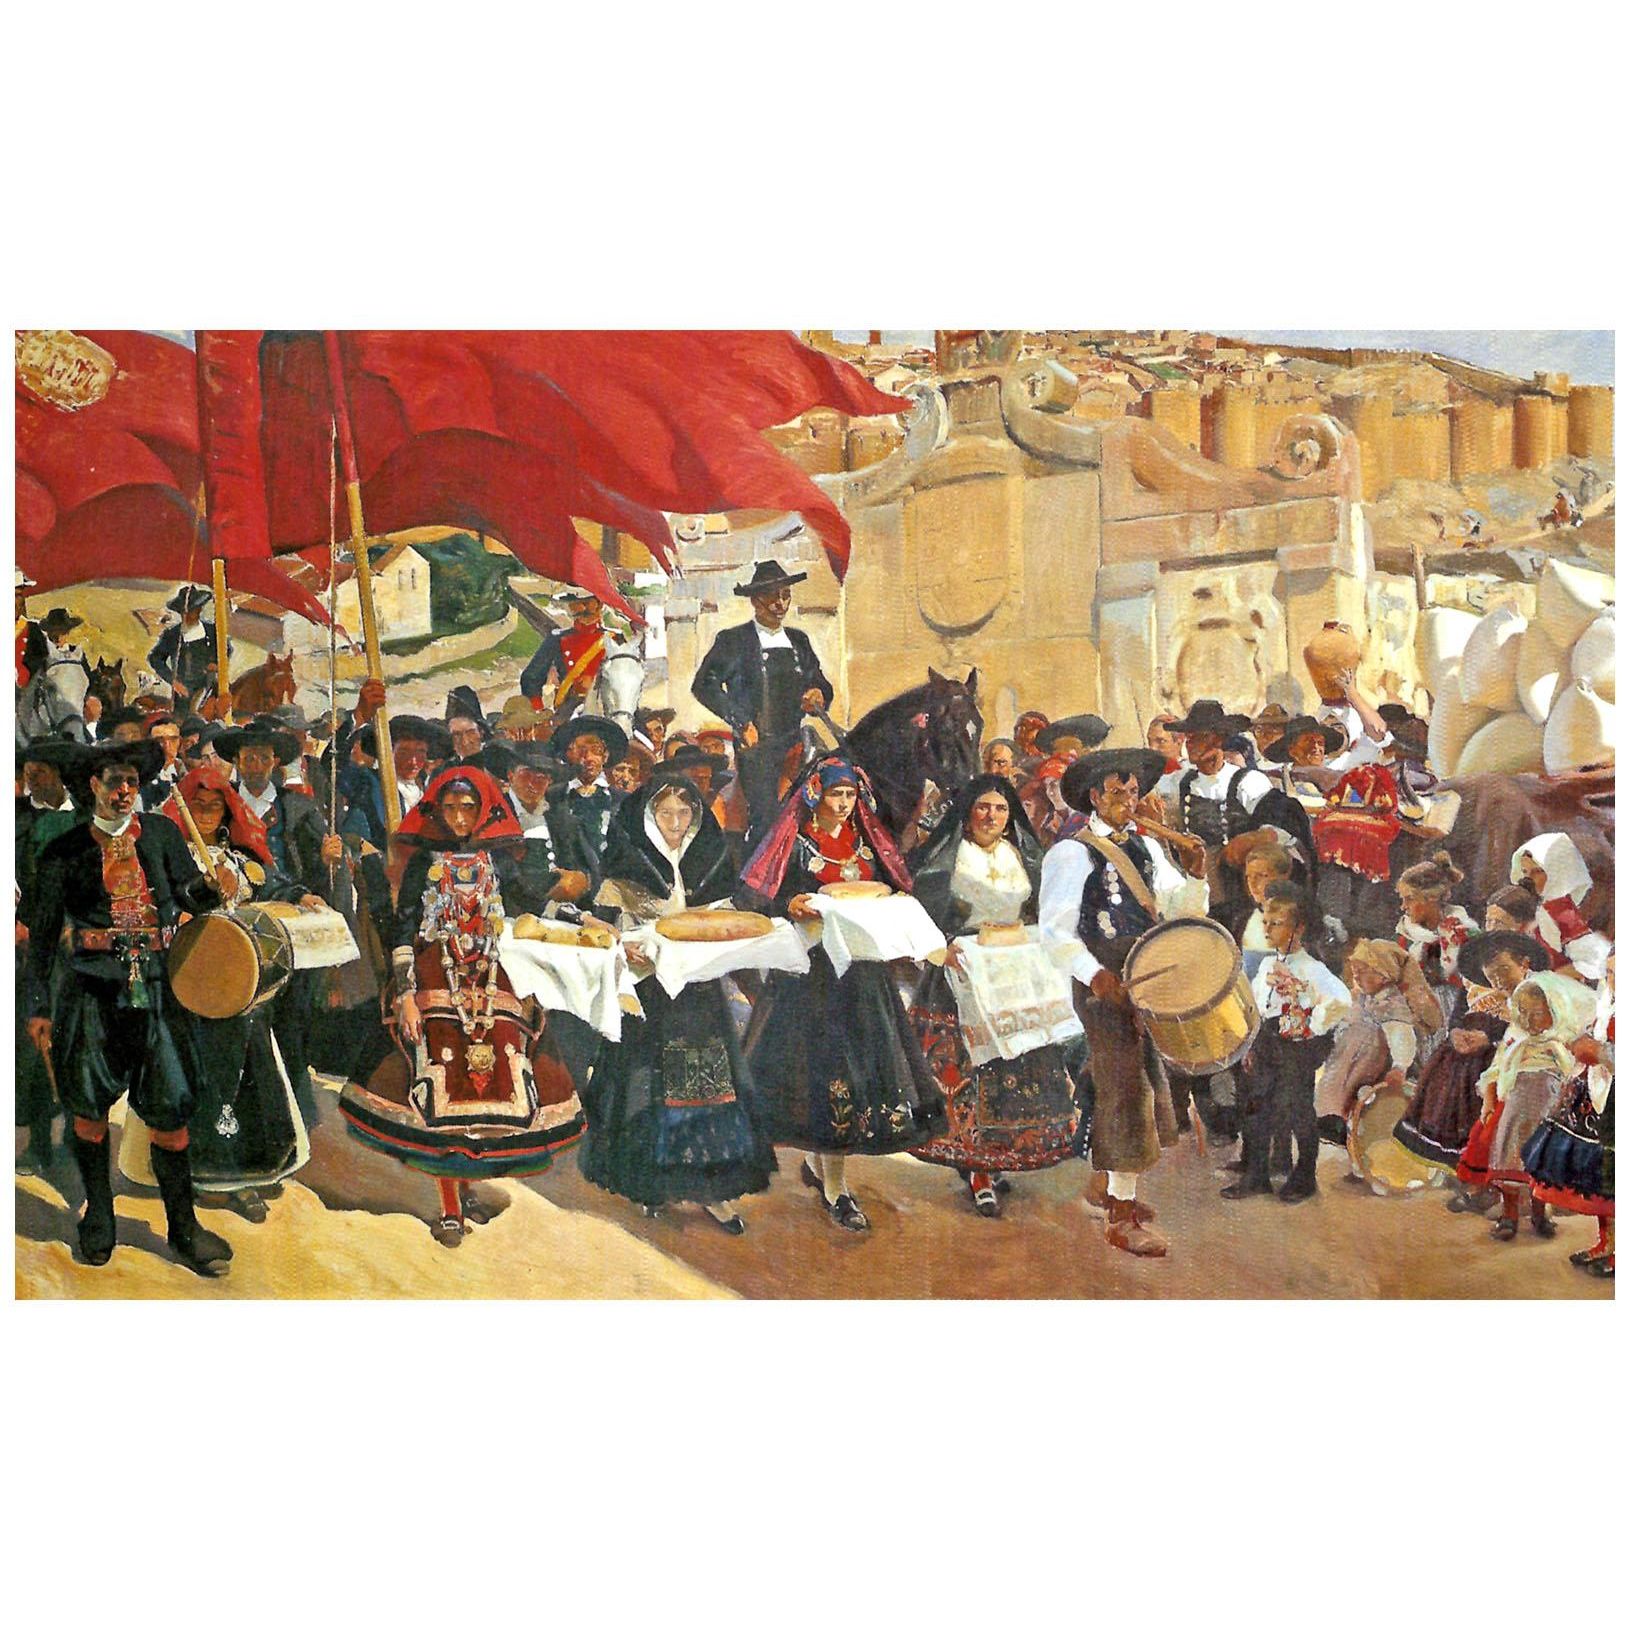 Joaquin Sorolla. La fiesta del pan (fragmento). 1913. Hispanic Society of America NY